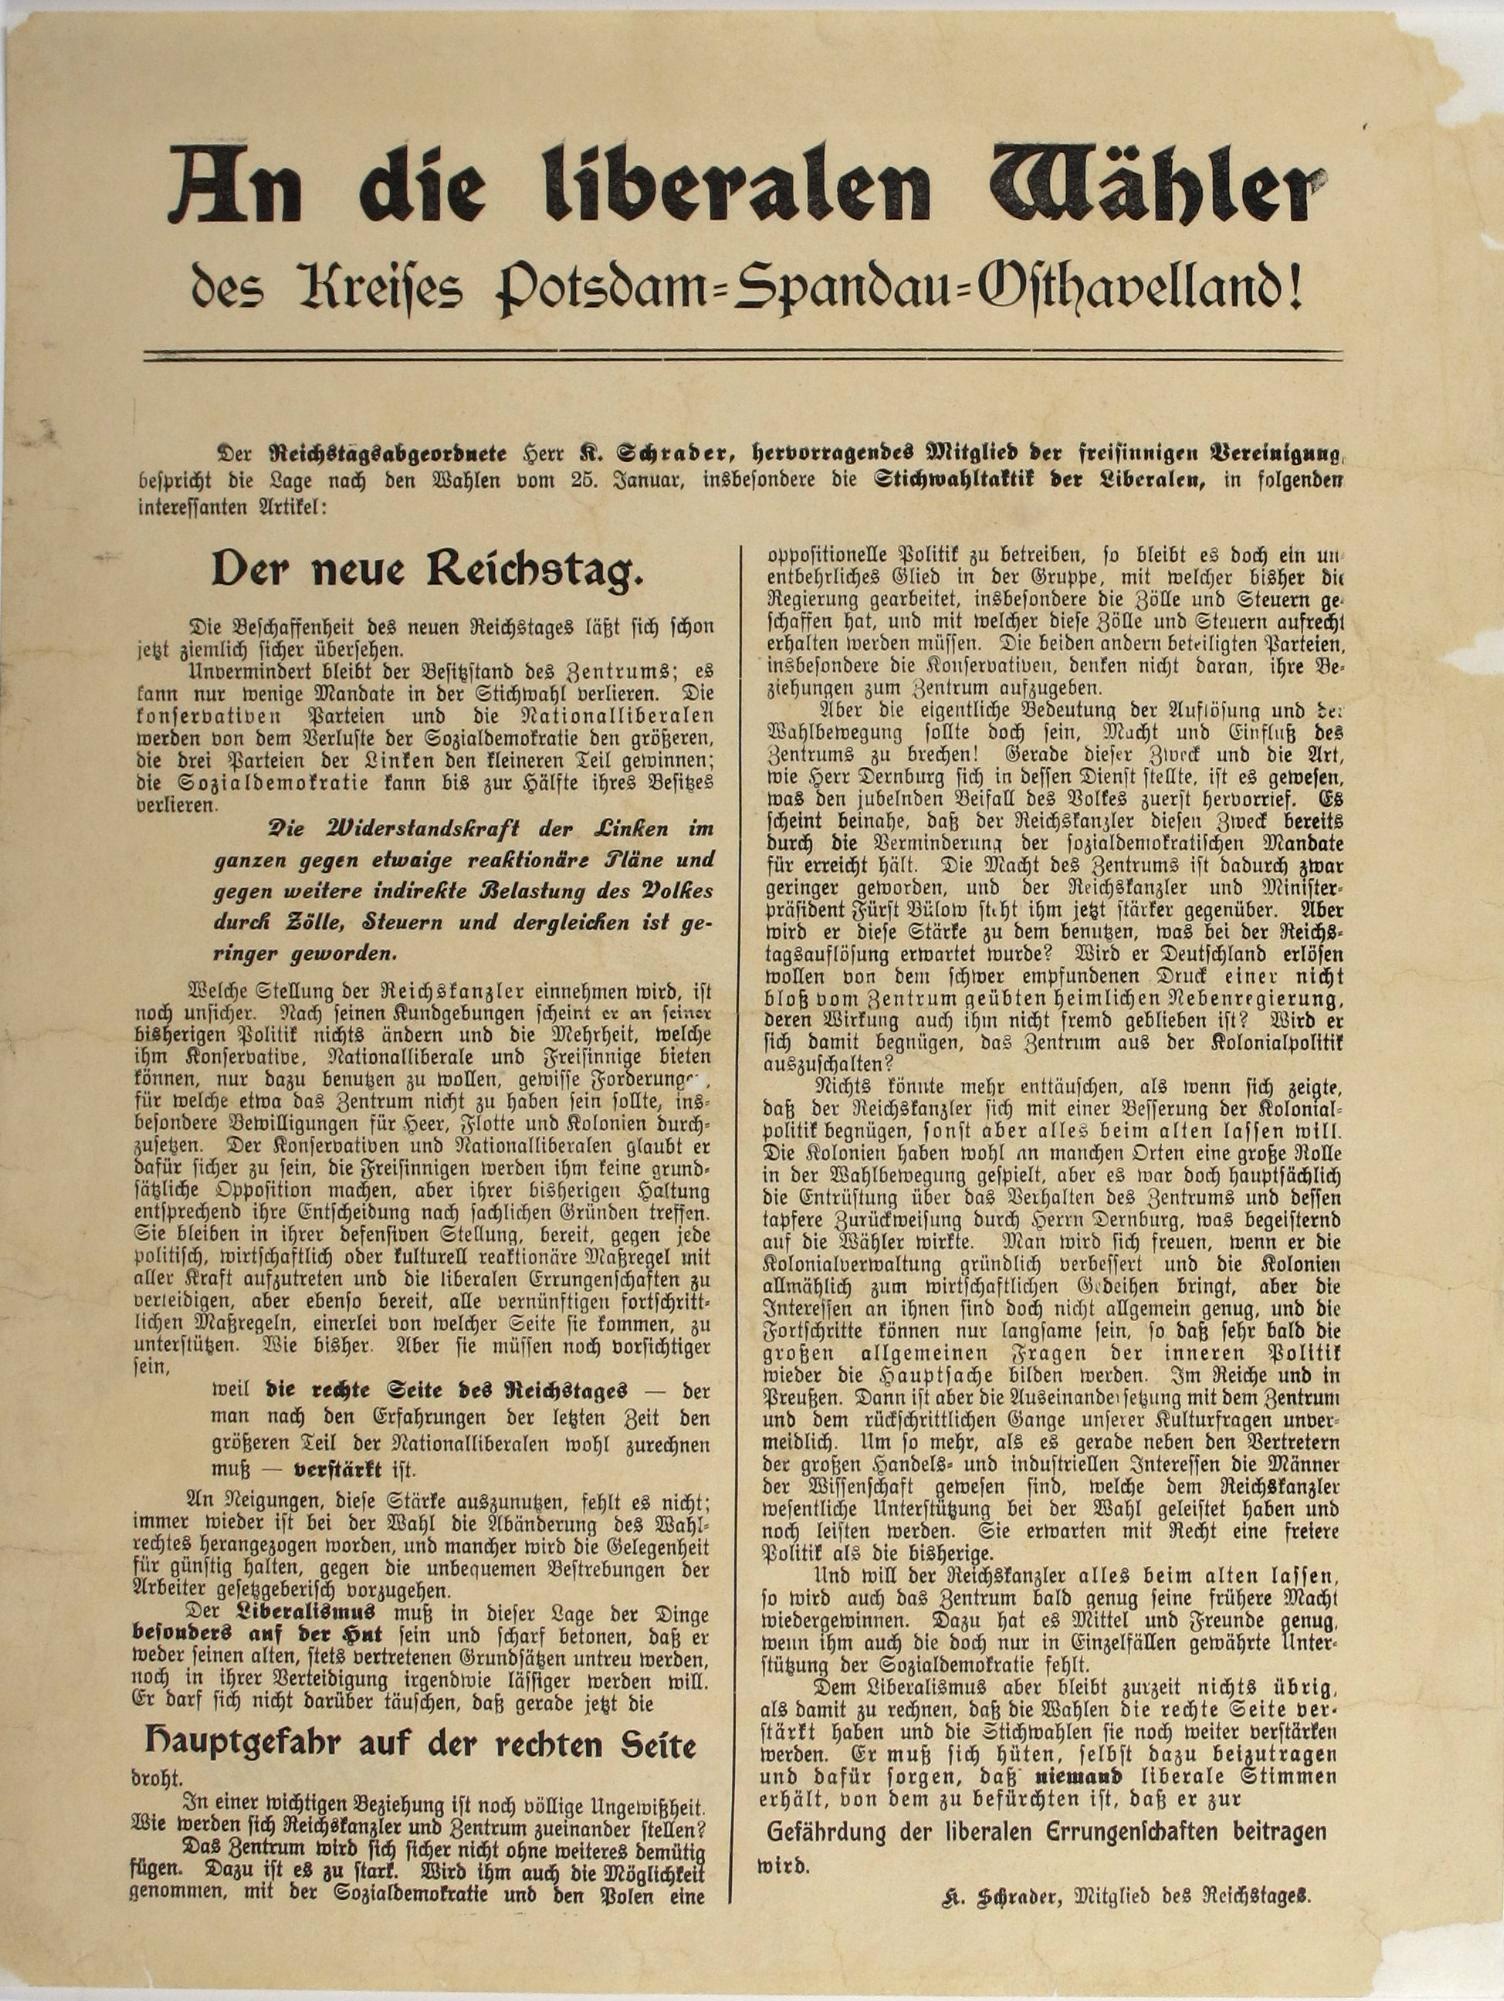 Flugblatt von Karl Schrader zur Reichstagswahl im Januar 1907